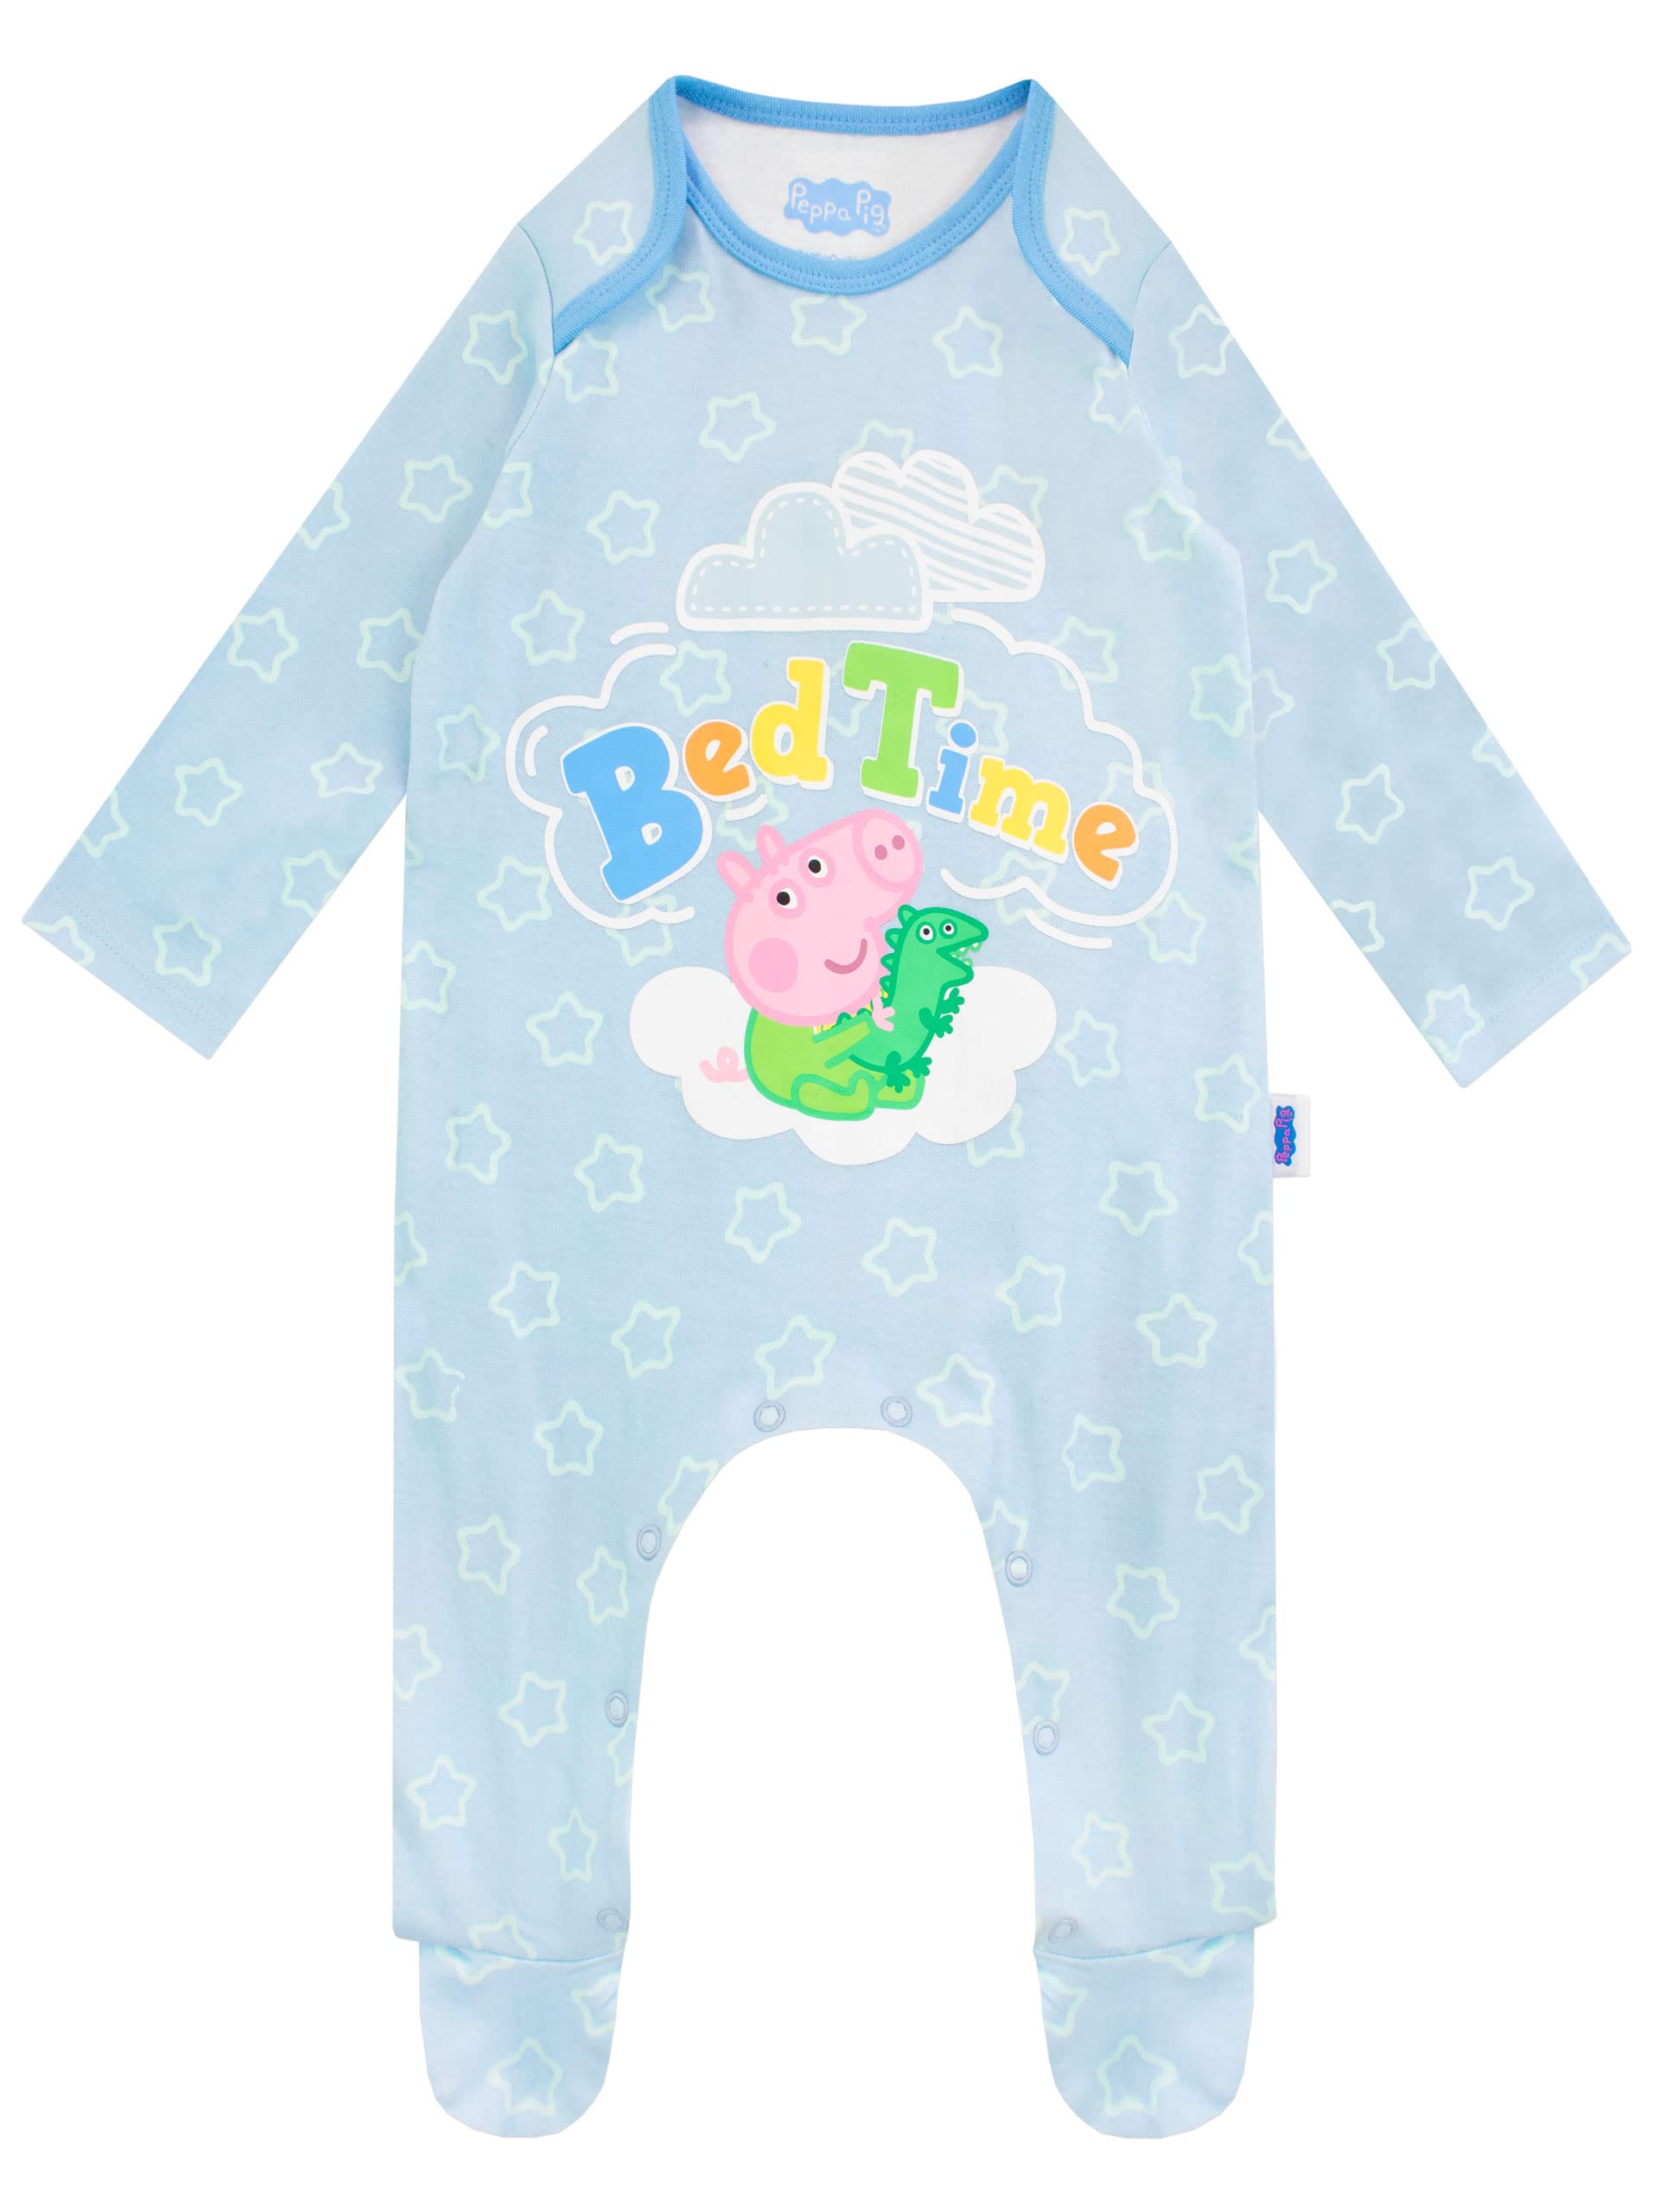 Peppa Pig Baby Jungen George Wutz Schlafanzug Blau 74